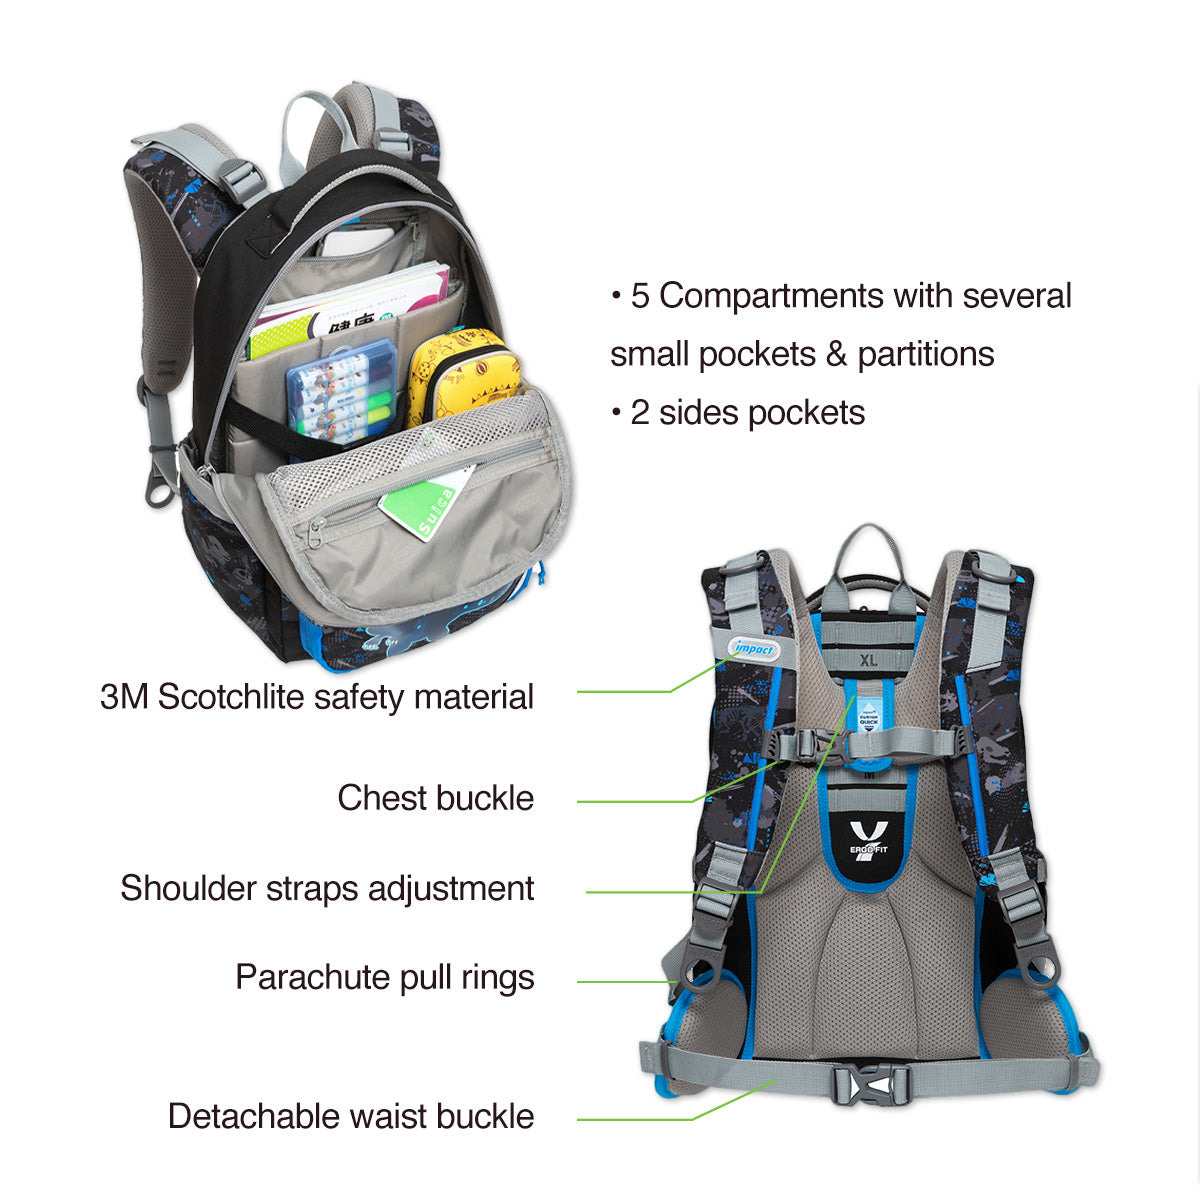 Impact School Bag IM-00226 - Ergo-Comfort Spinal Support School Backpack